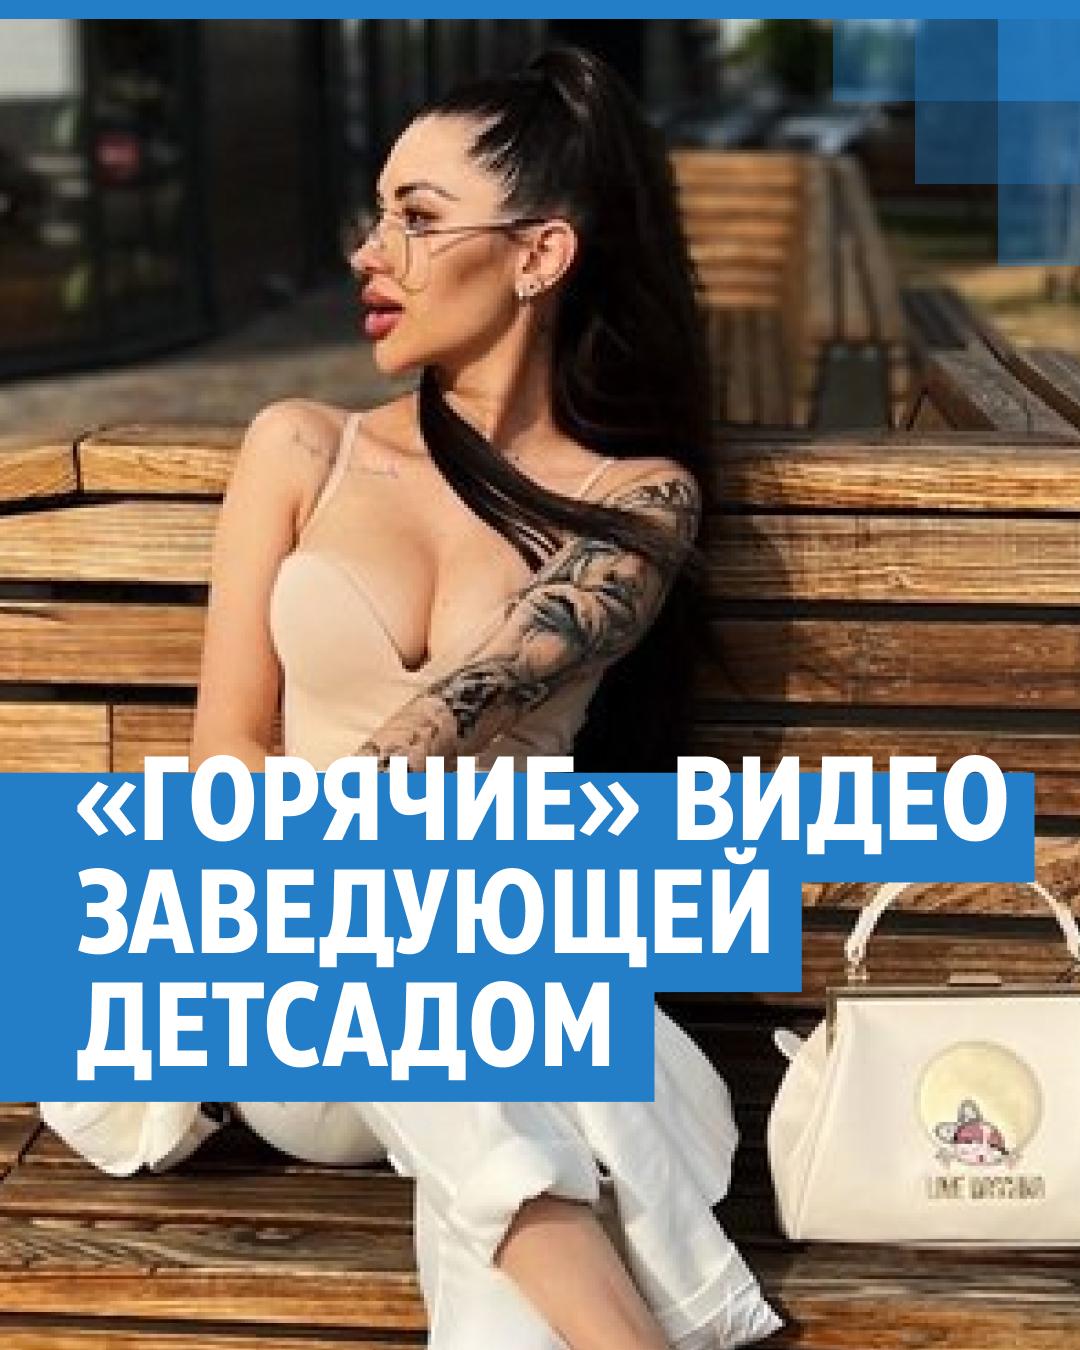 Участница Comedy Woman из Красноярска упала в рейтинге самых сексуальных женщин страны